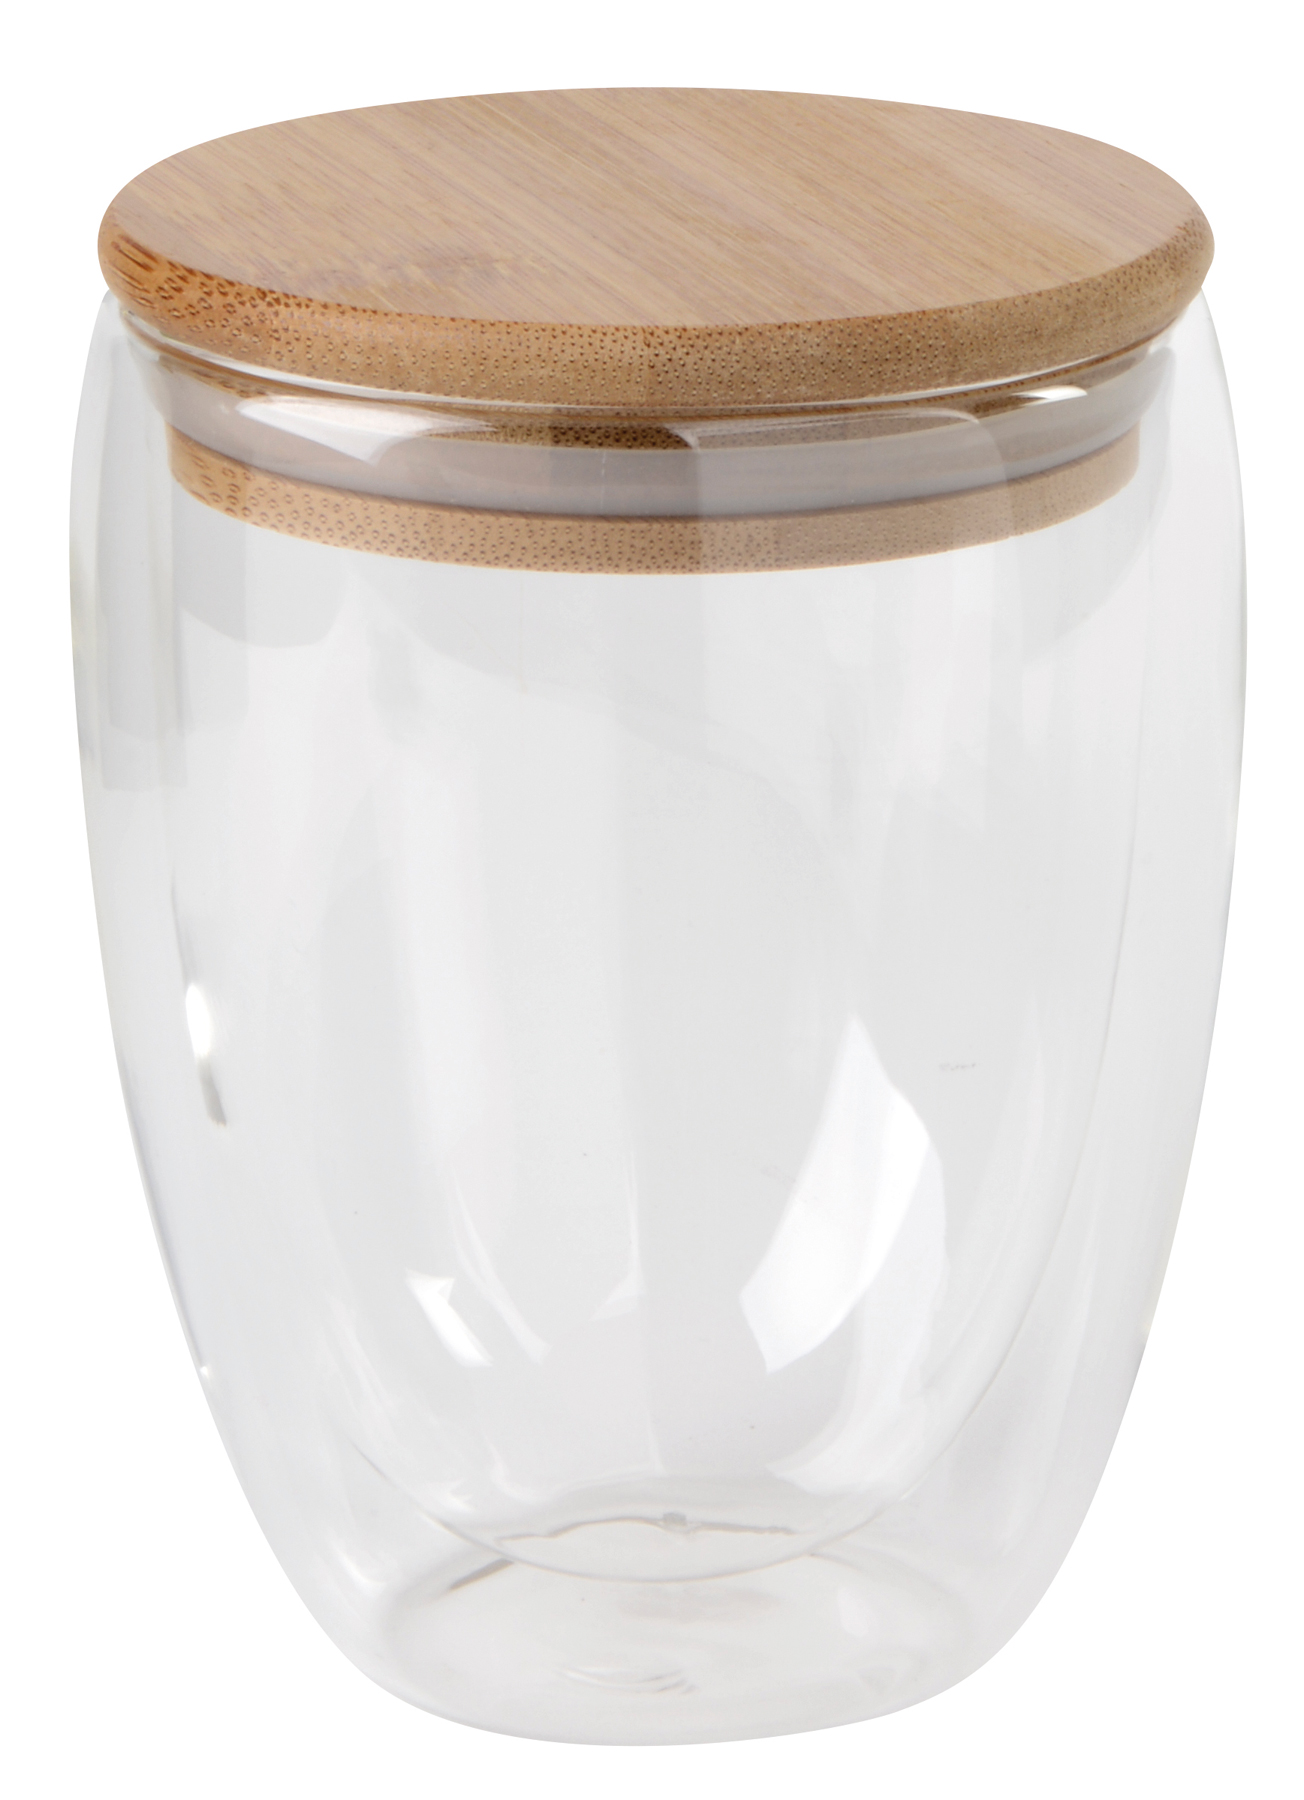 Dvouplášťová sklenice BAMBOO ART M s víčkem z bambusu: průhledné, odolné vůči teplotě, kapacita cca. 350 ml - hnědá